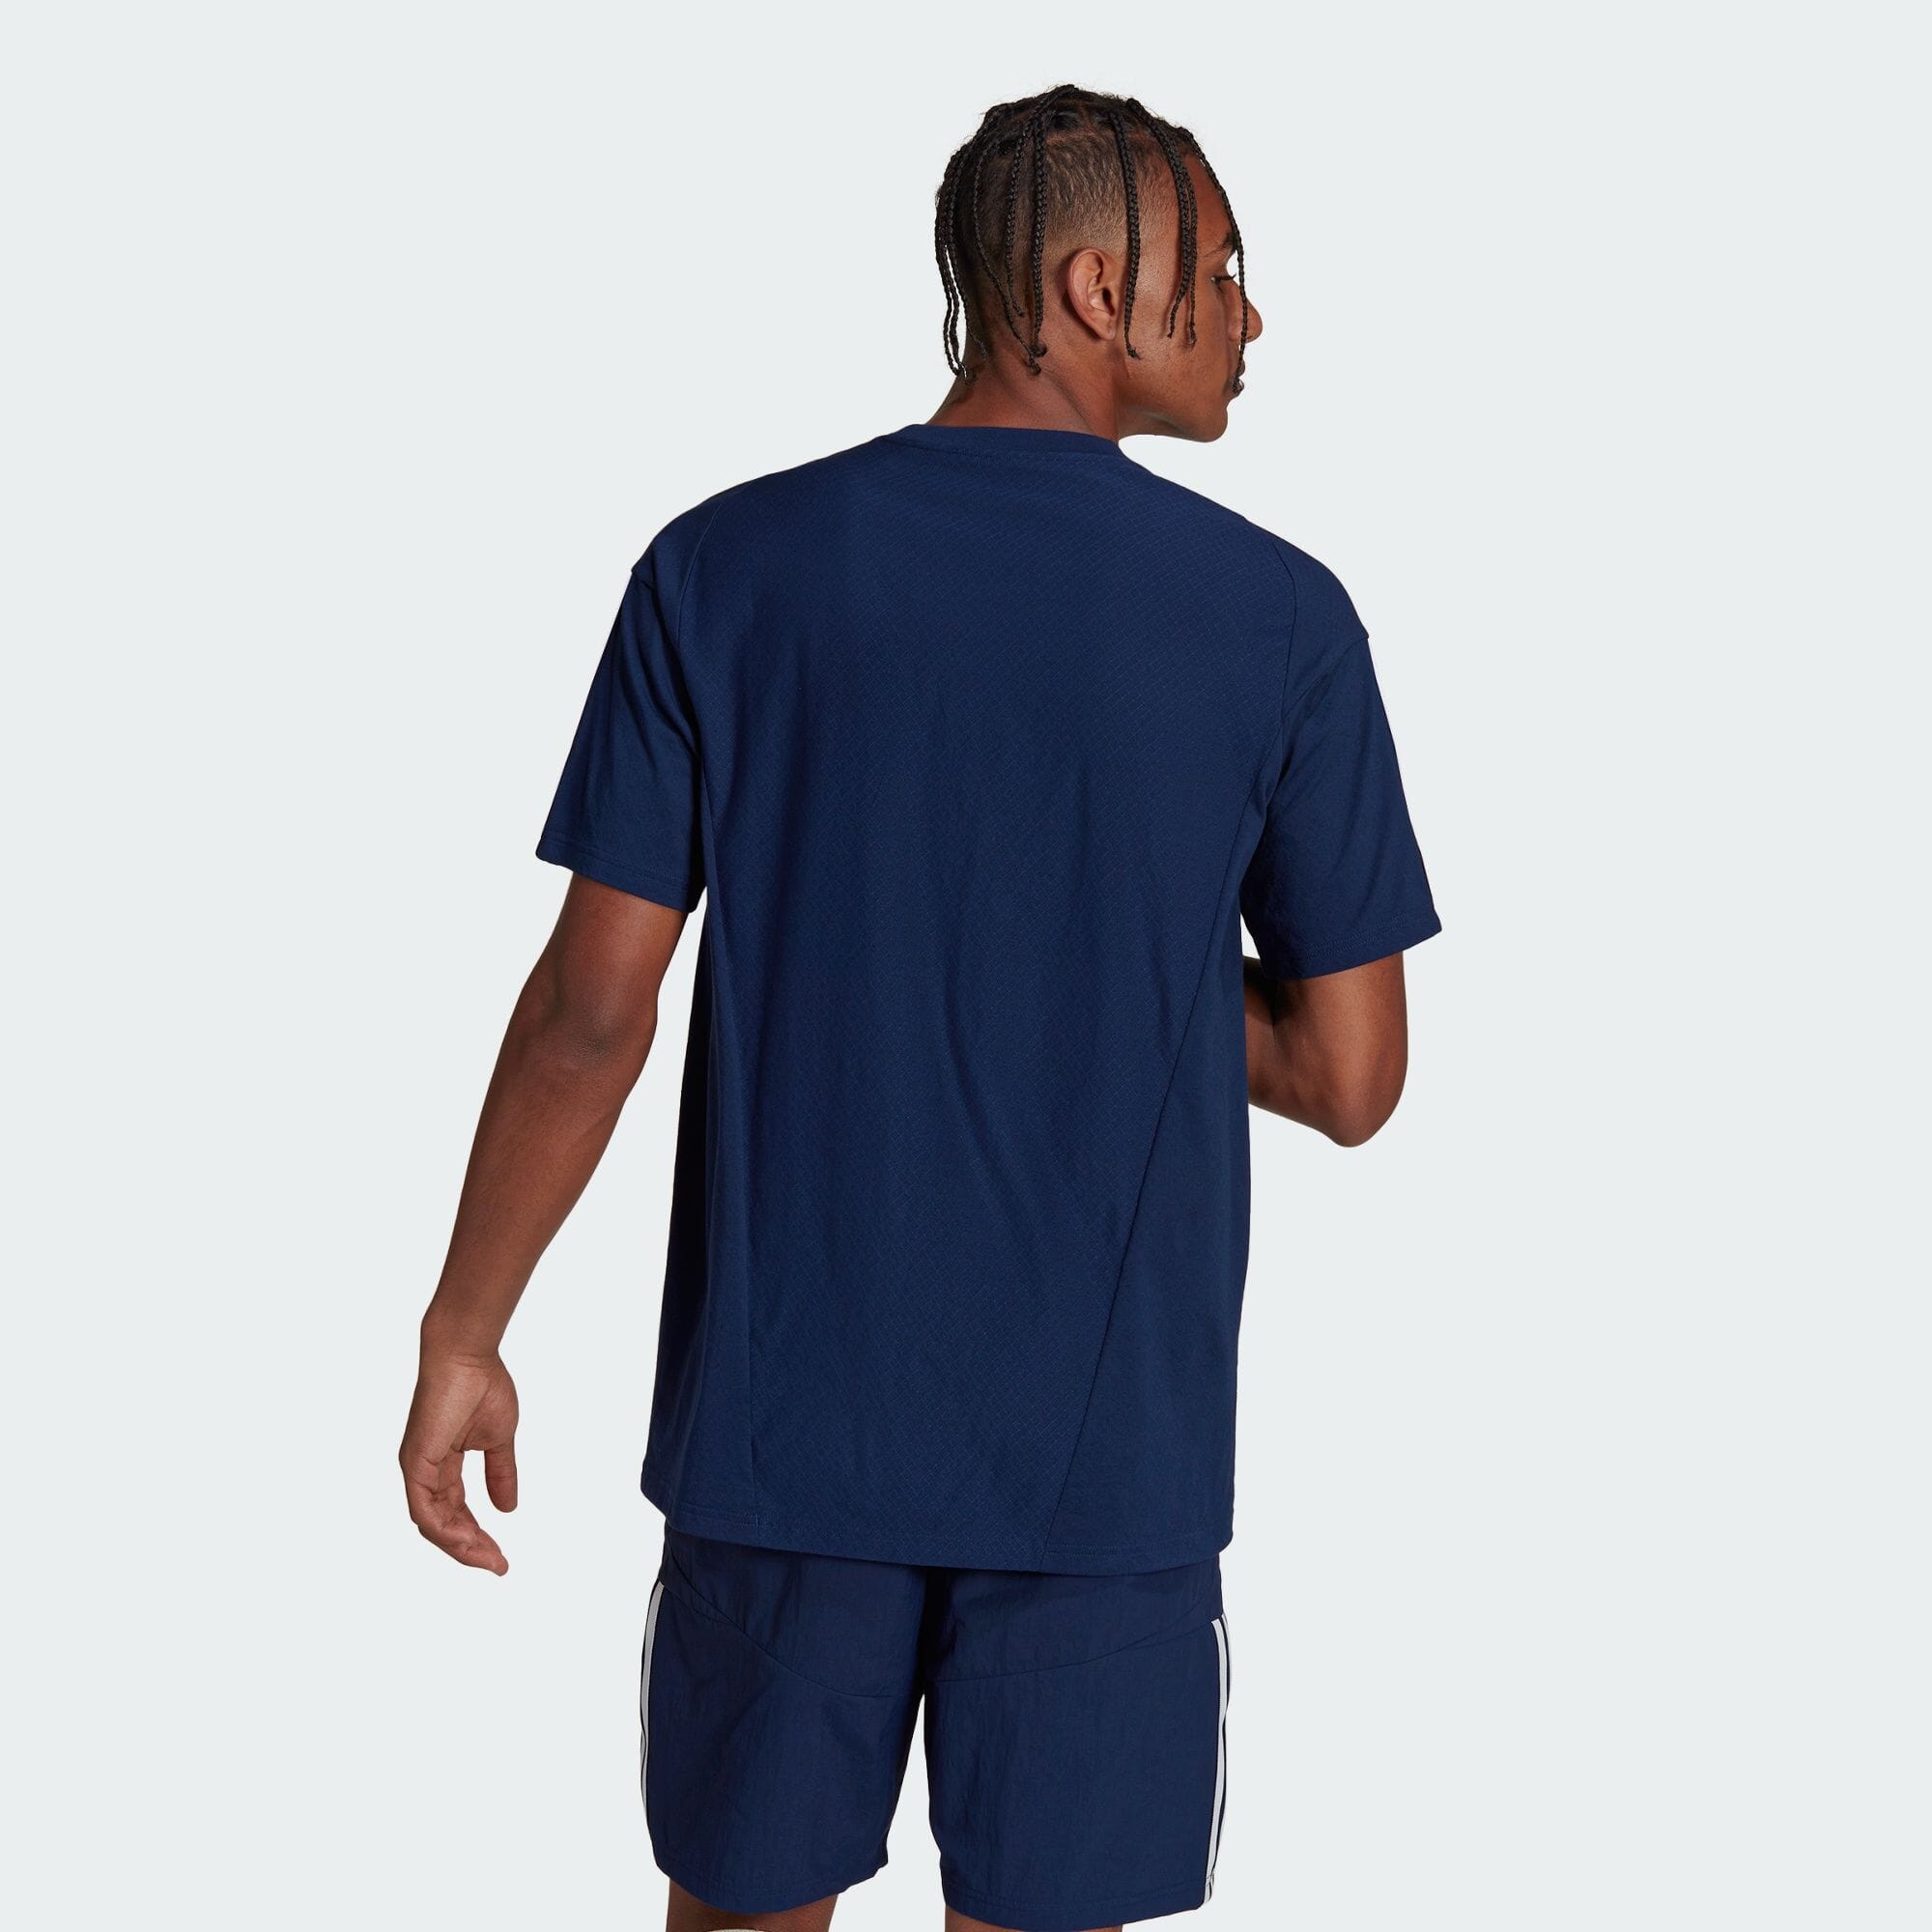 ティロ 23 コンペティション 半袖Tシャツ メンズ サッカー|フットサル